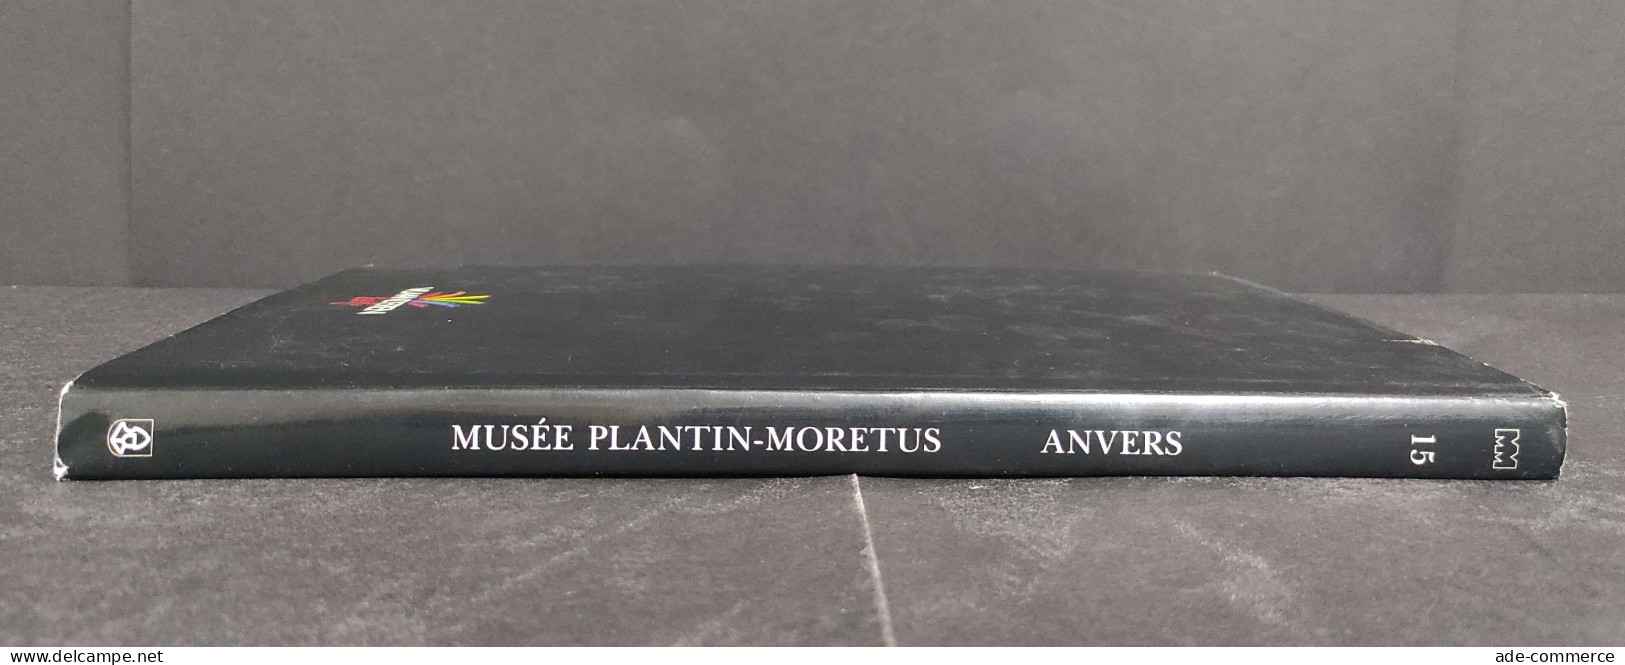 Musee Platin-Moretus - Anvers - F. Nave - L. Voet - 1989 - Kunst, Antiek